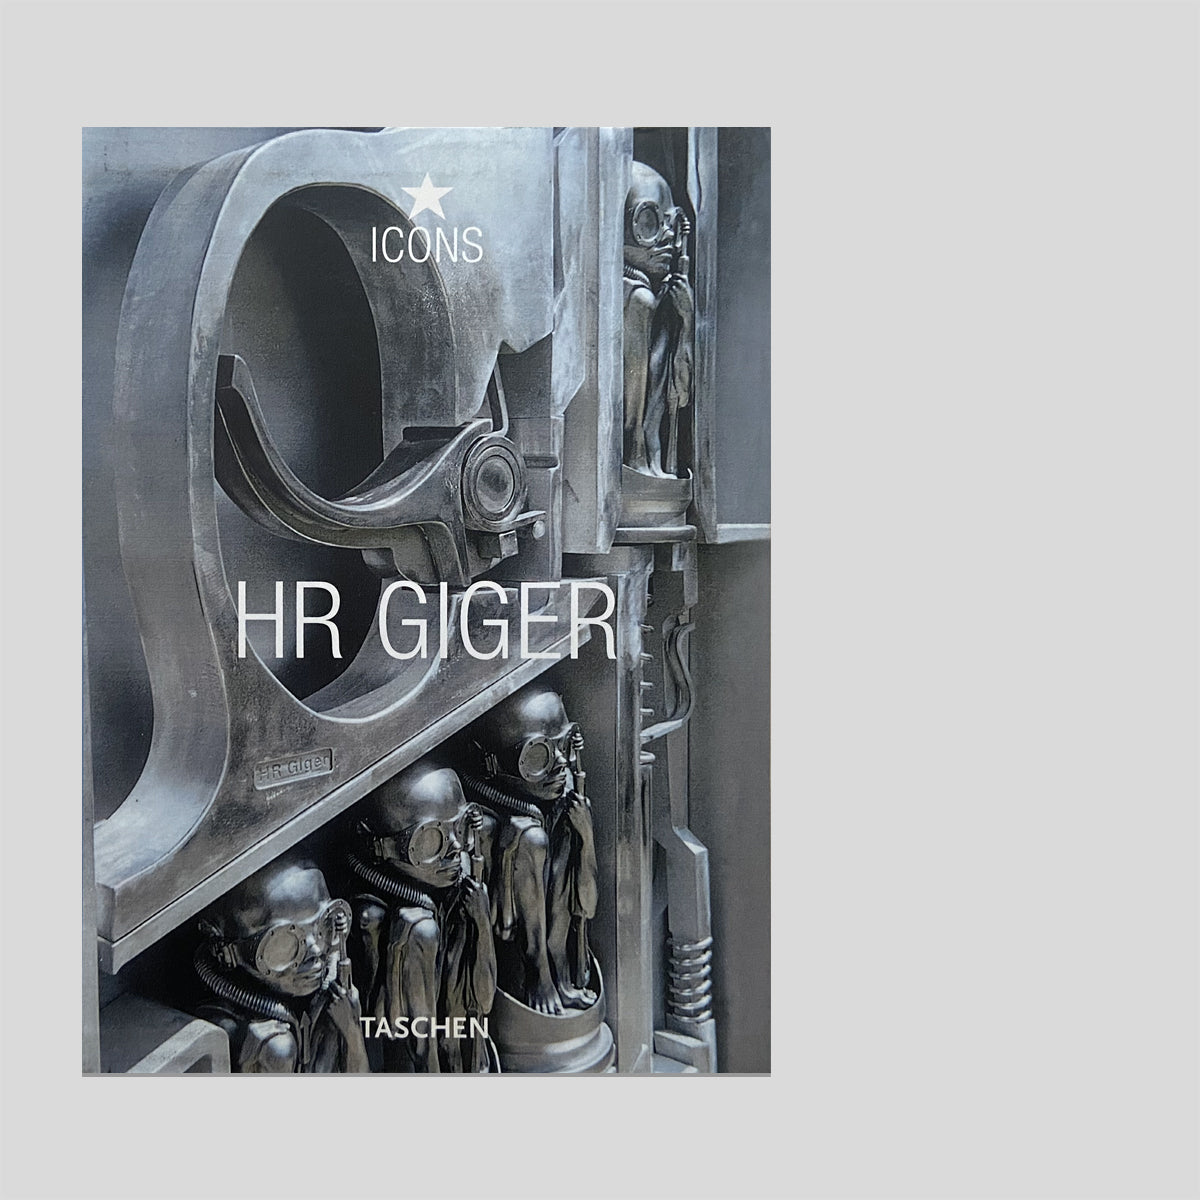 Icons - HR Girger